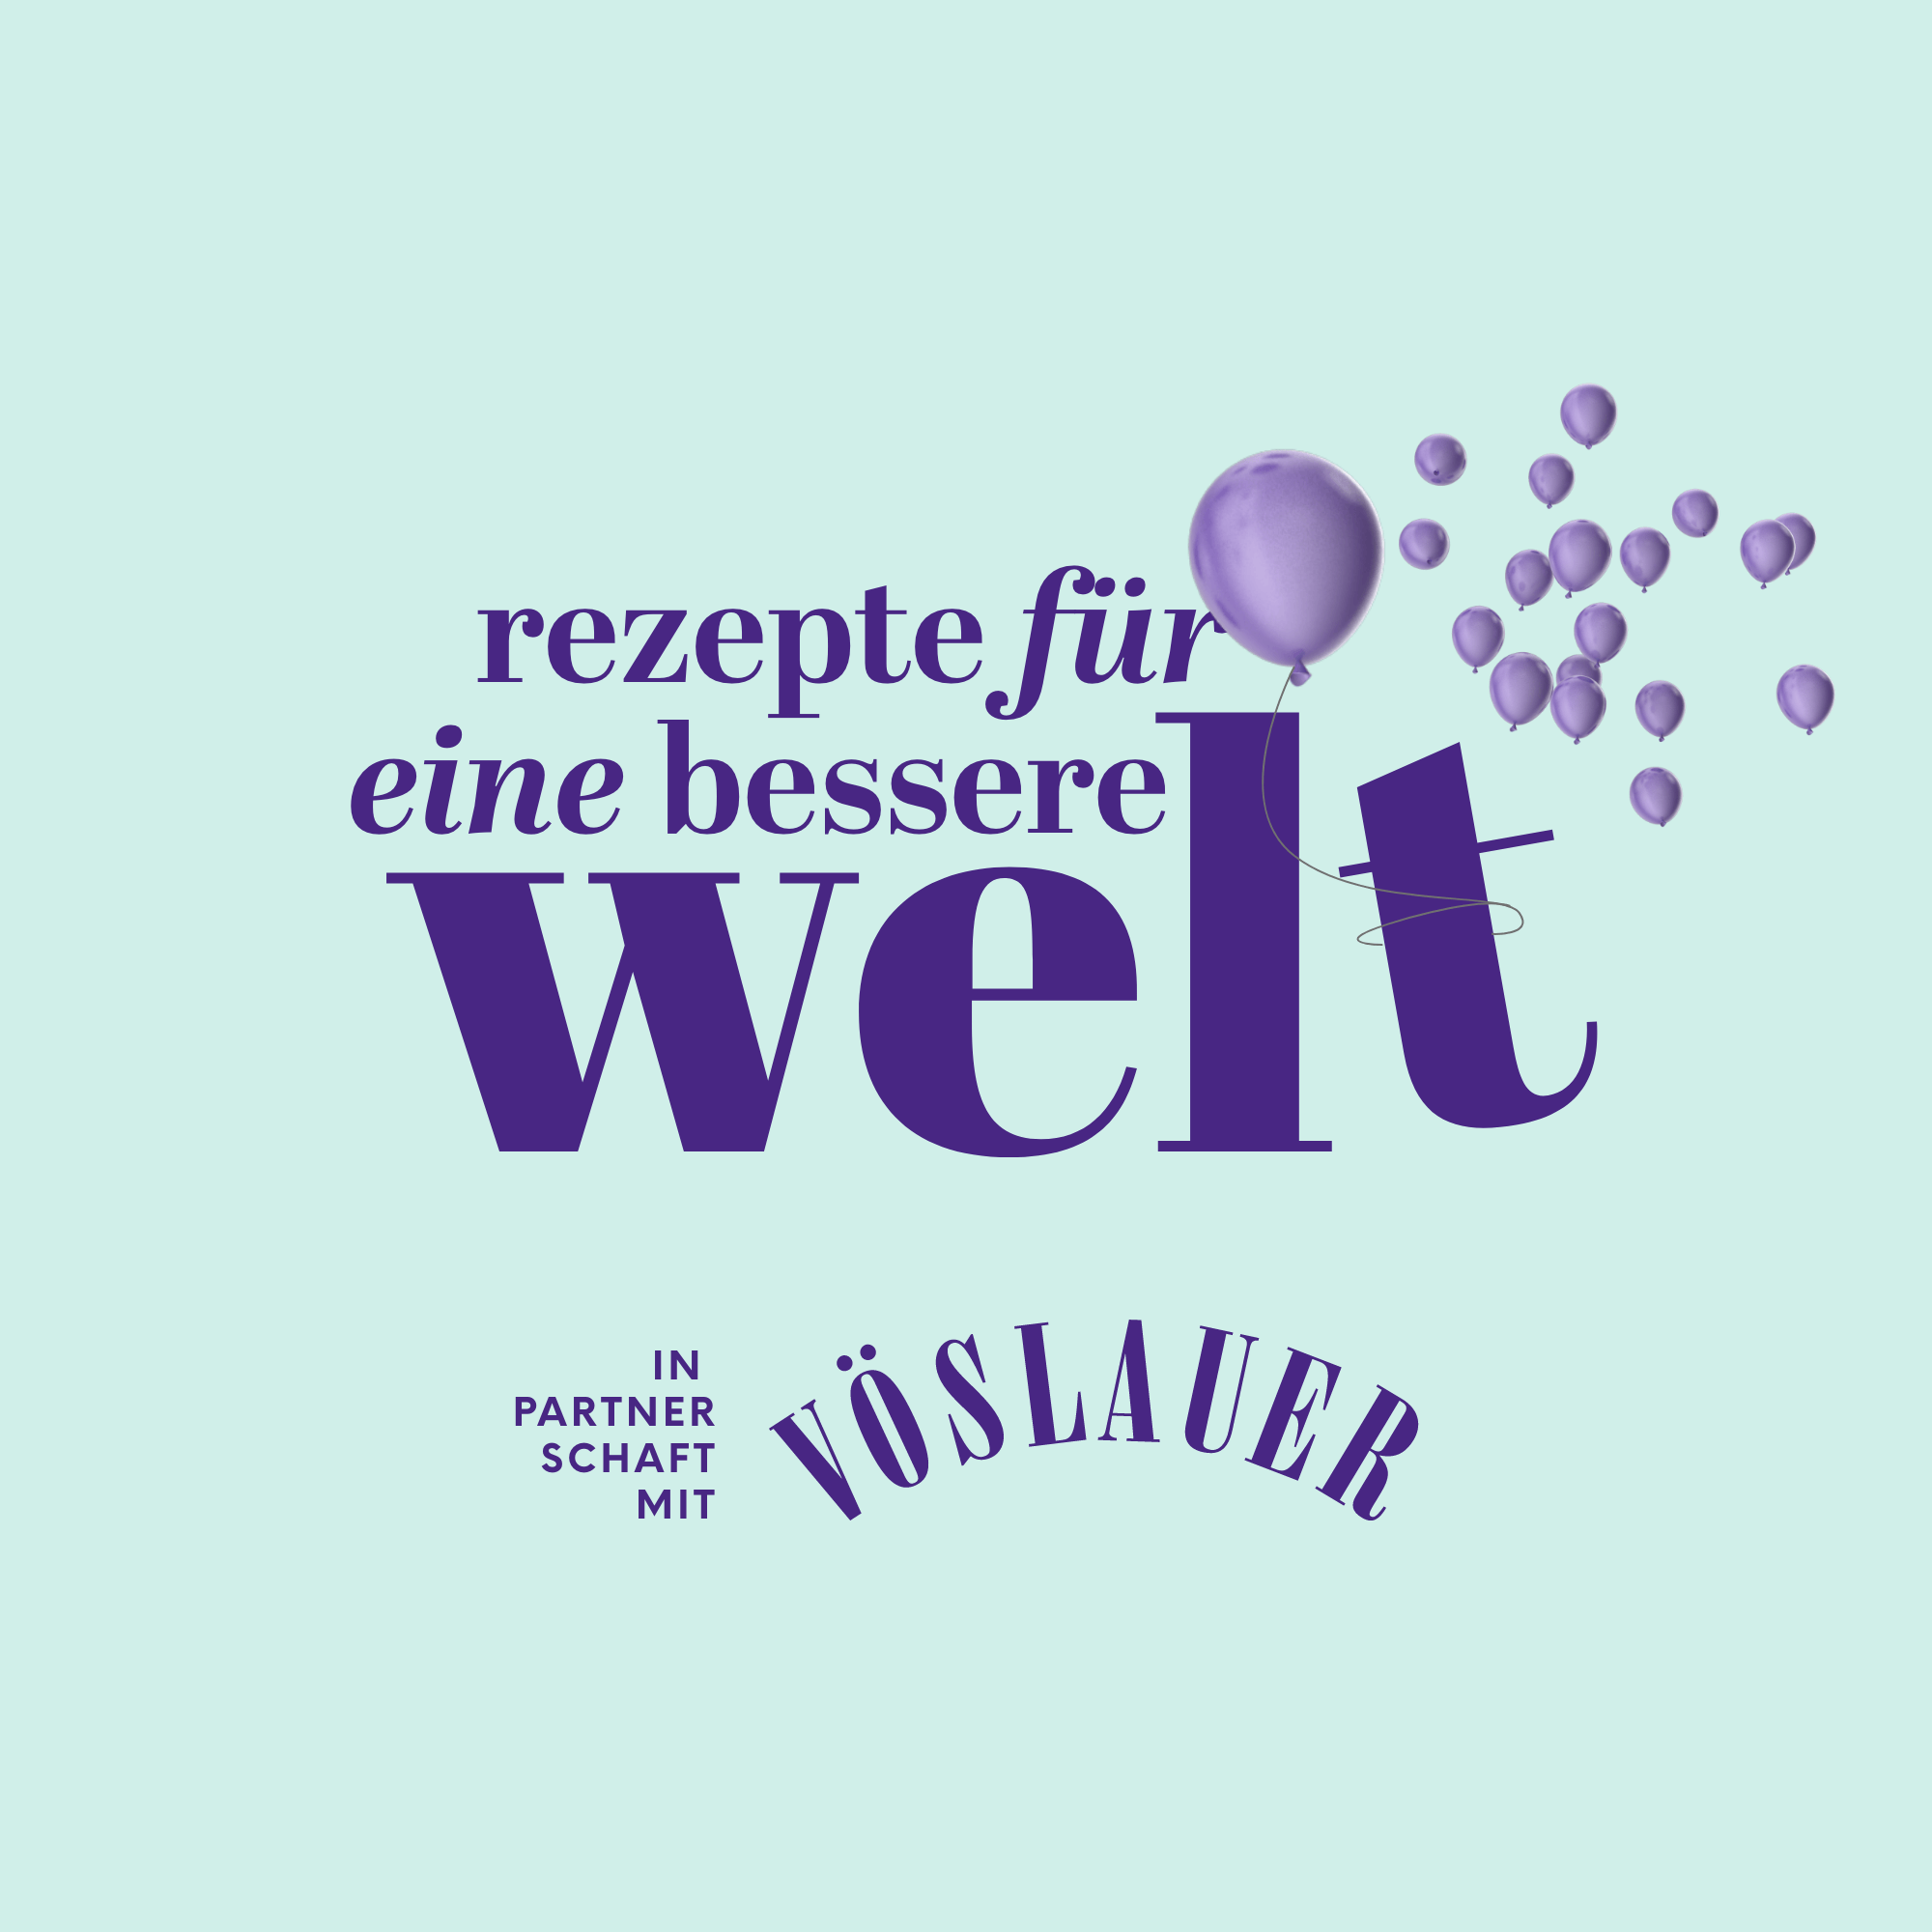 Austria-Food-Blog-Award-AFBA-2022-Rezepte-fuer-eine-bessere-Welt-Voeslauer.png